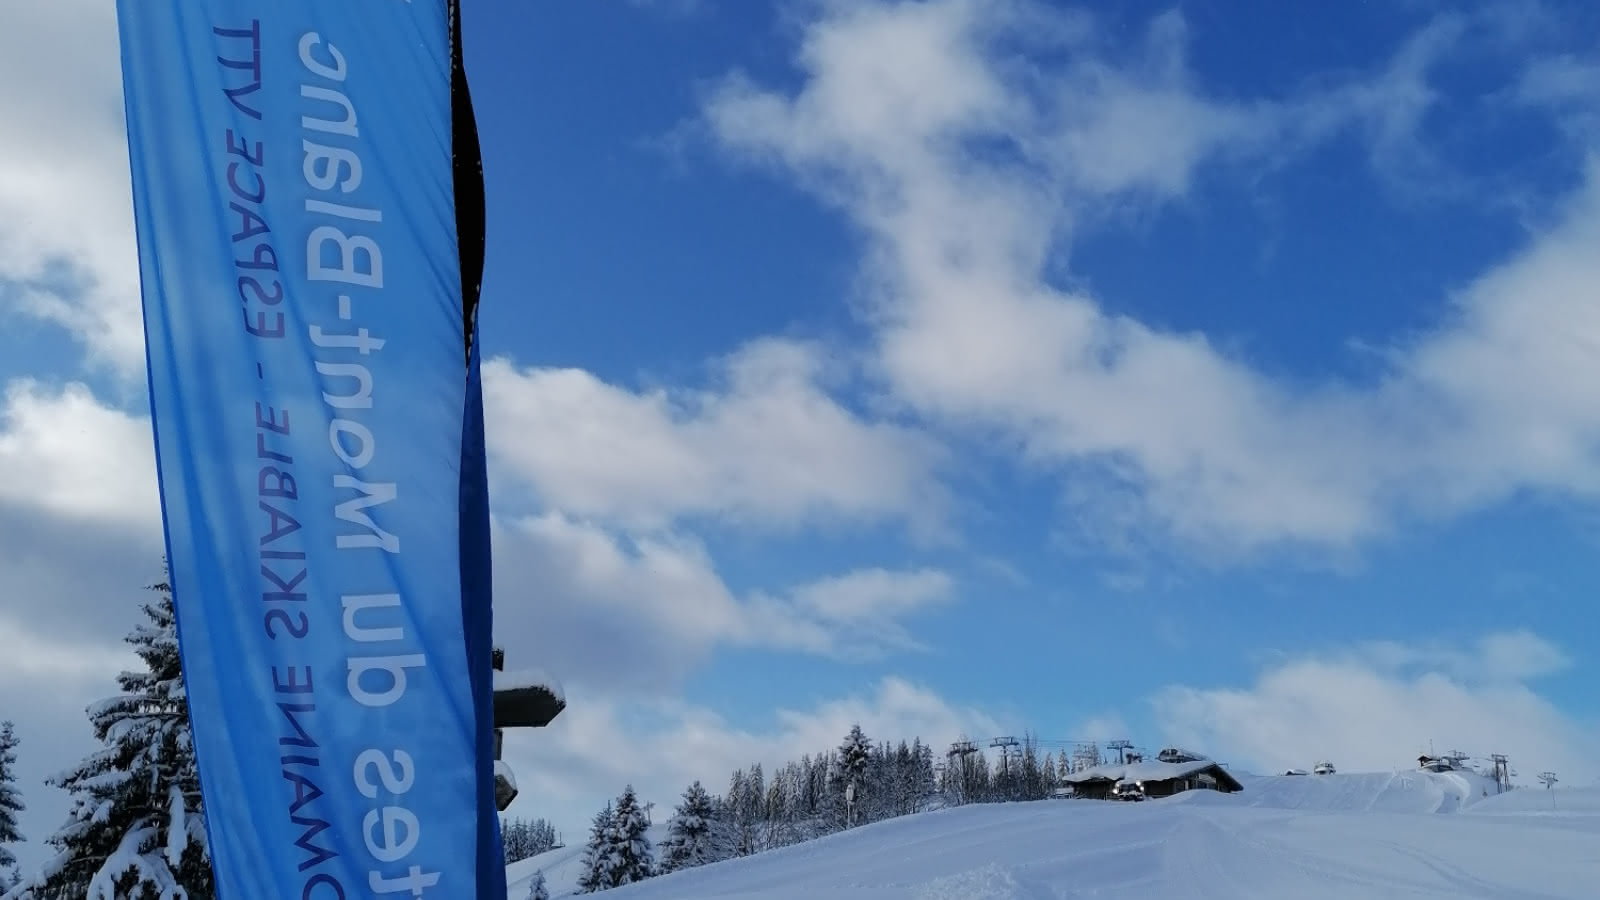 De bonne matin, le boarder-cross des Portes du Mont-Blanc ouvre ses portes sur une neige fraiche bien damée